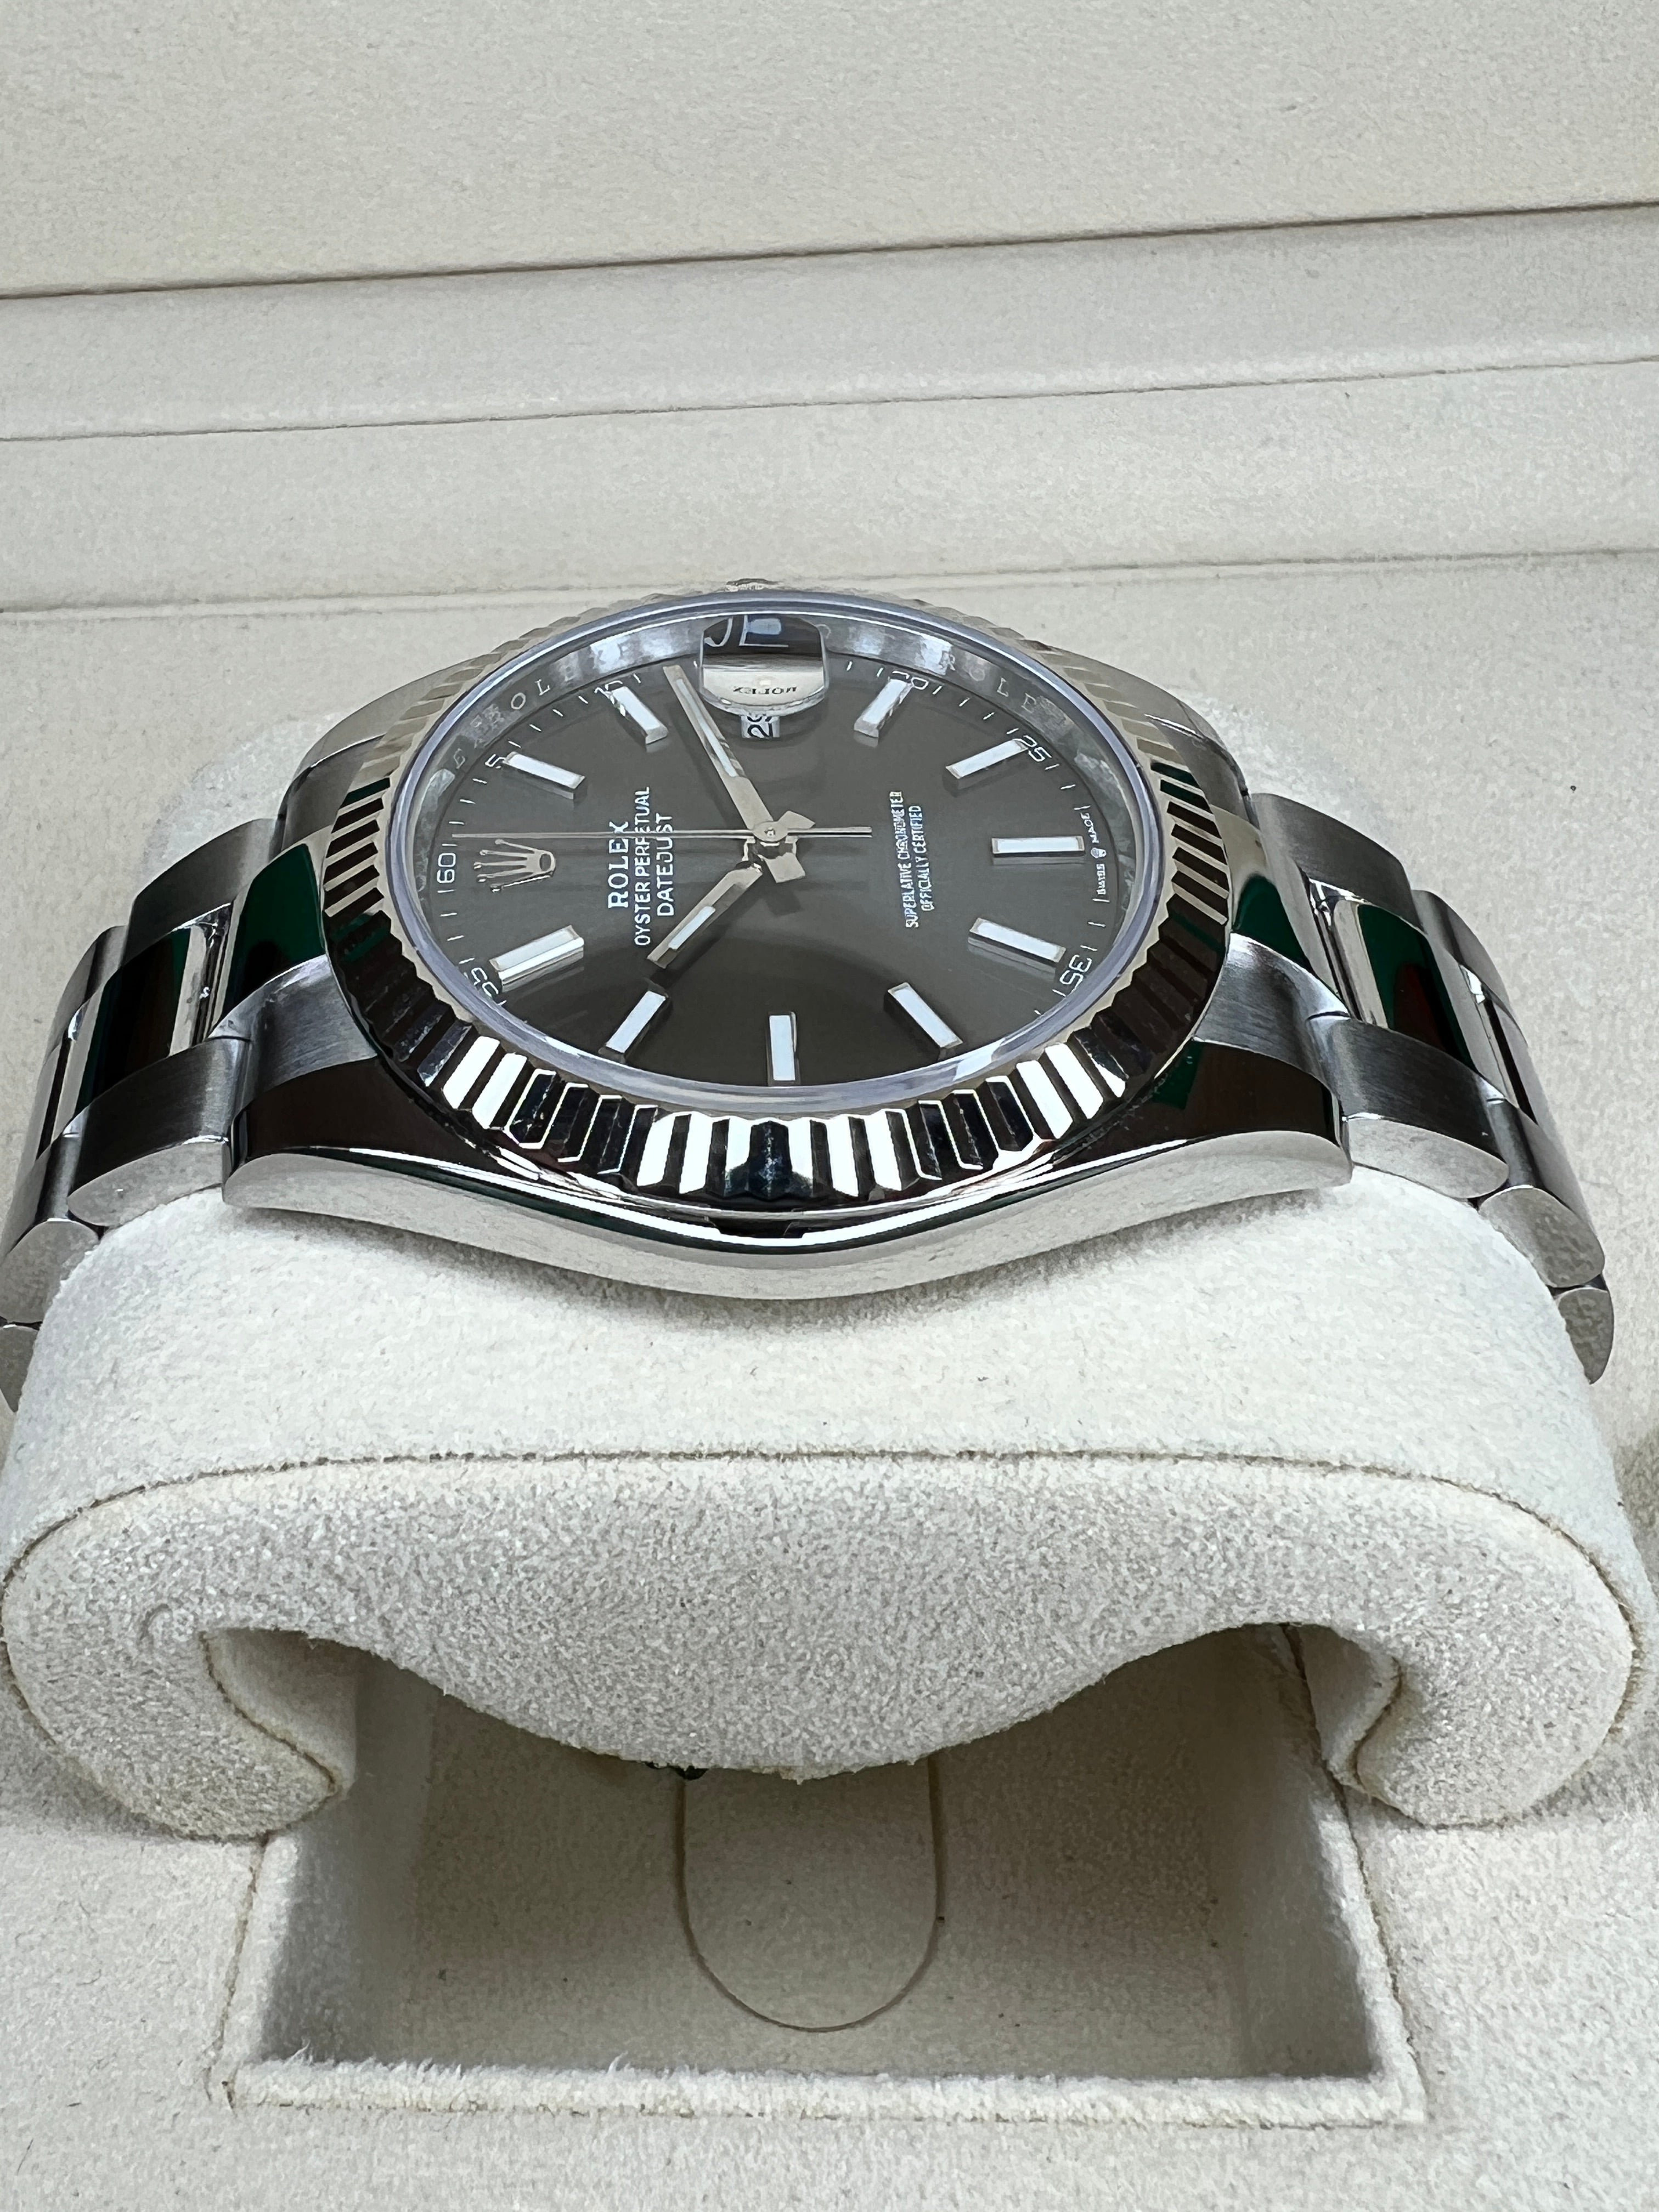 Rolex Datejust 41mm Watch 126334 dkrio